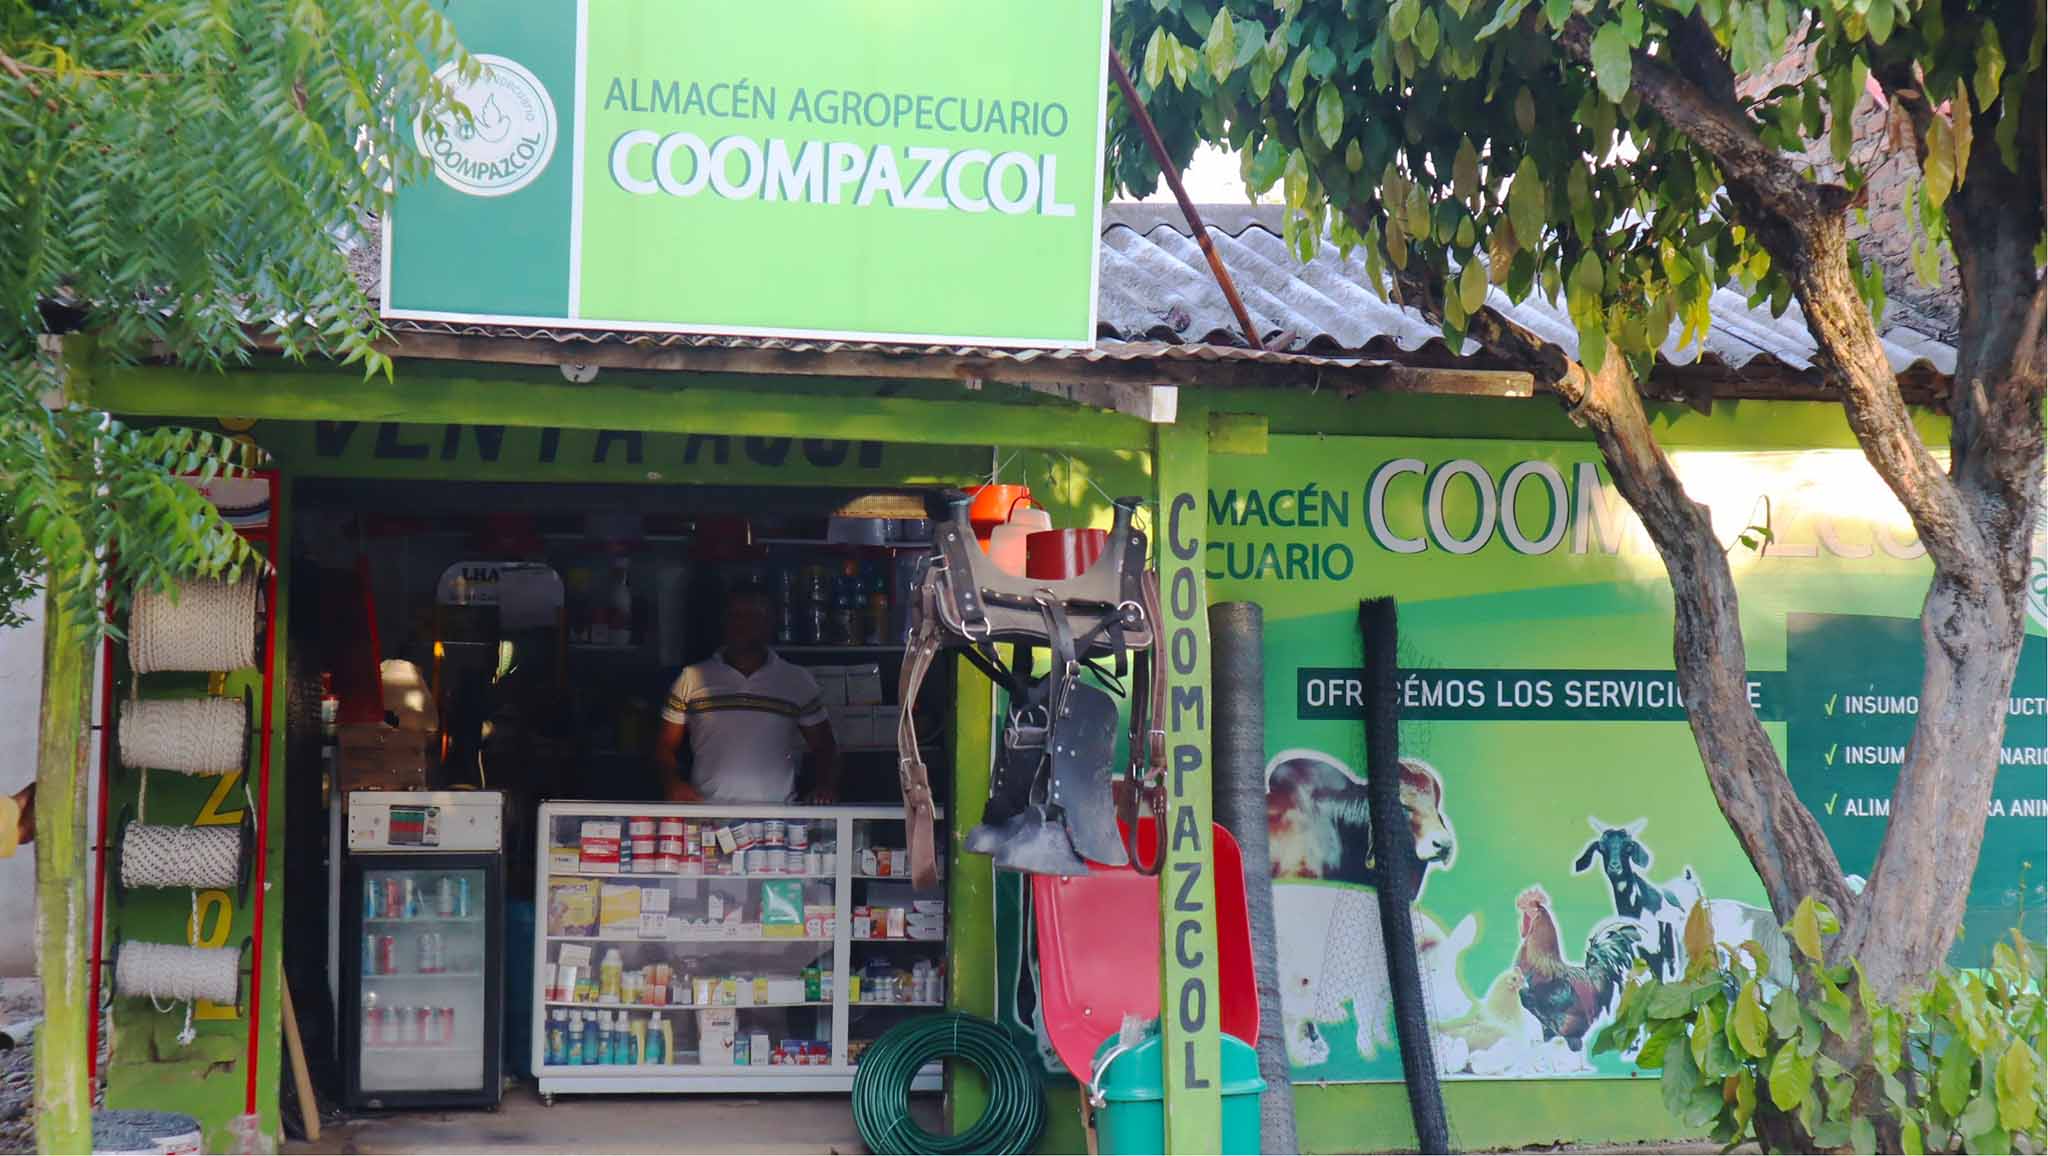 COOMPAZCOL store - ERA of Fonseca